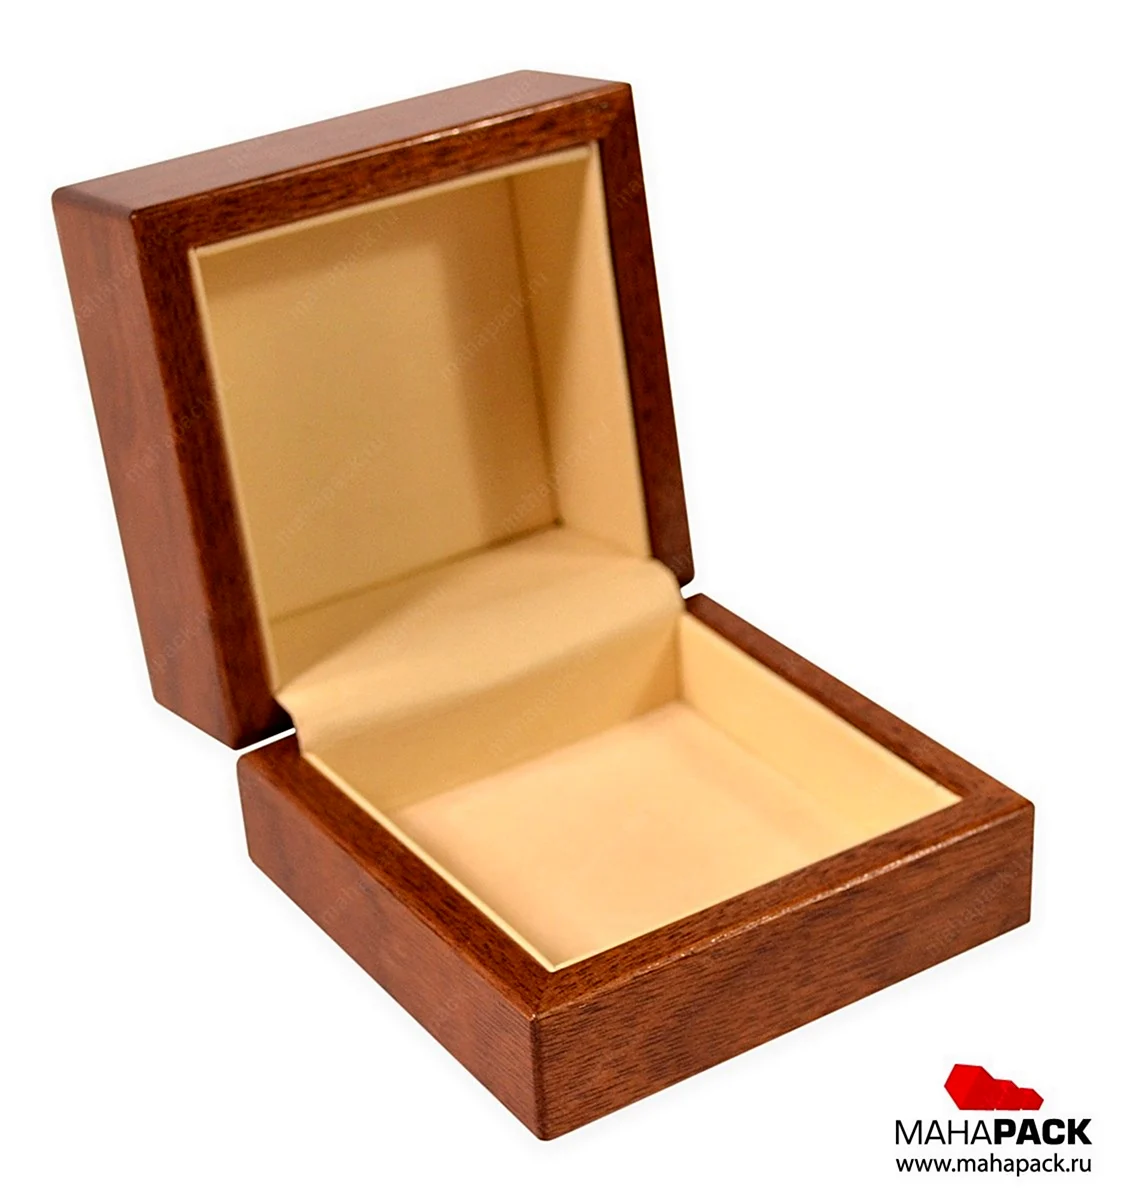 Деревянные коробочки для ювелирных изделий